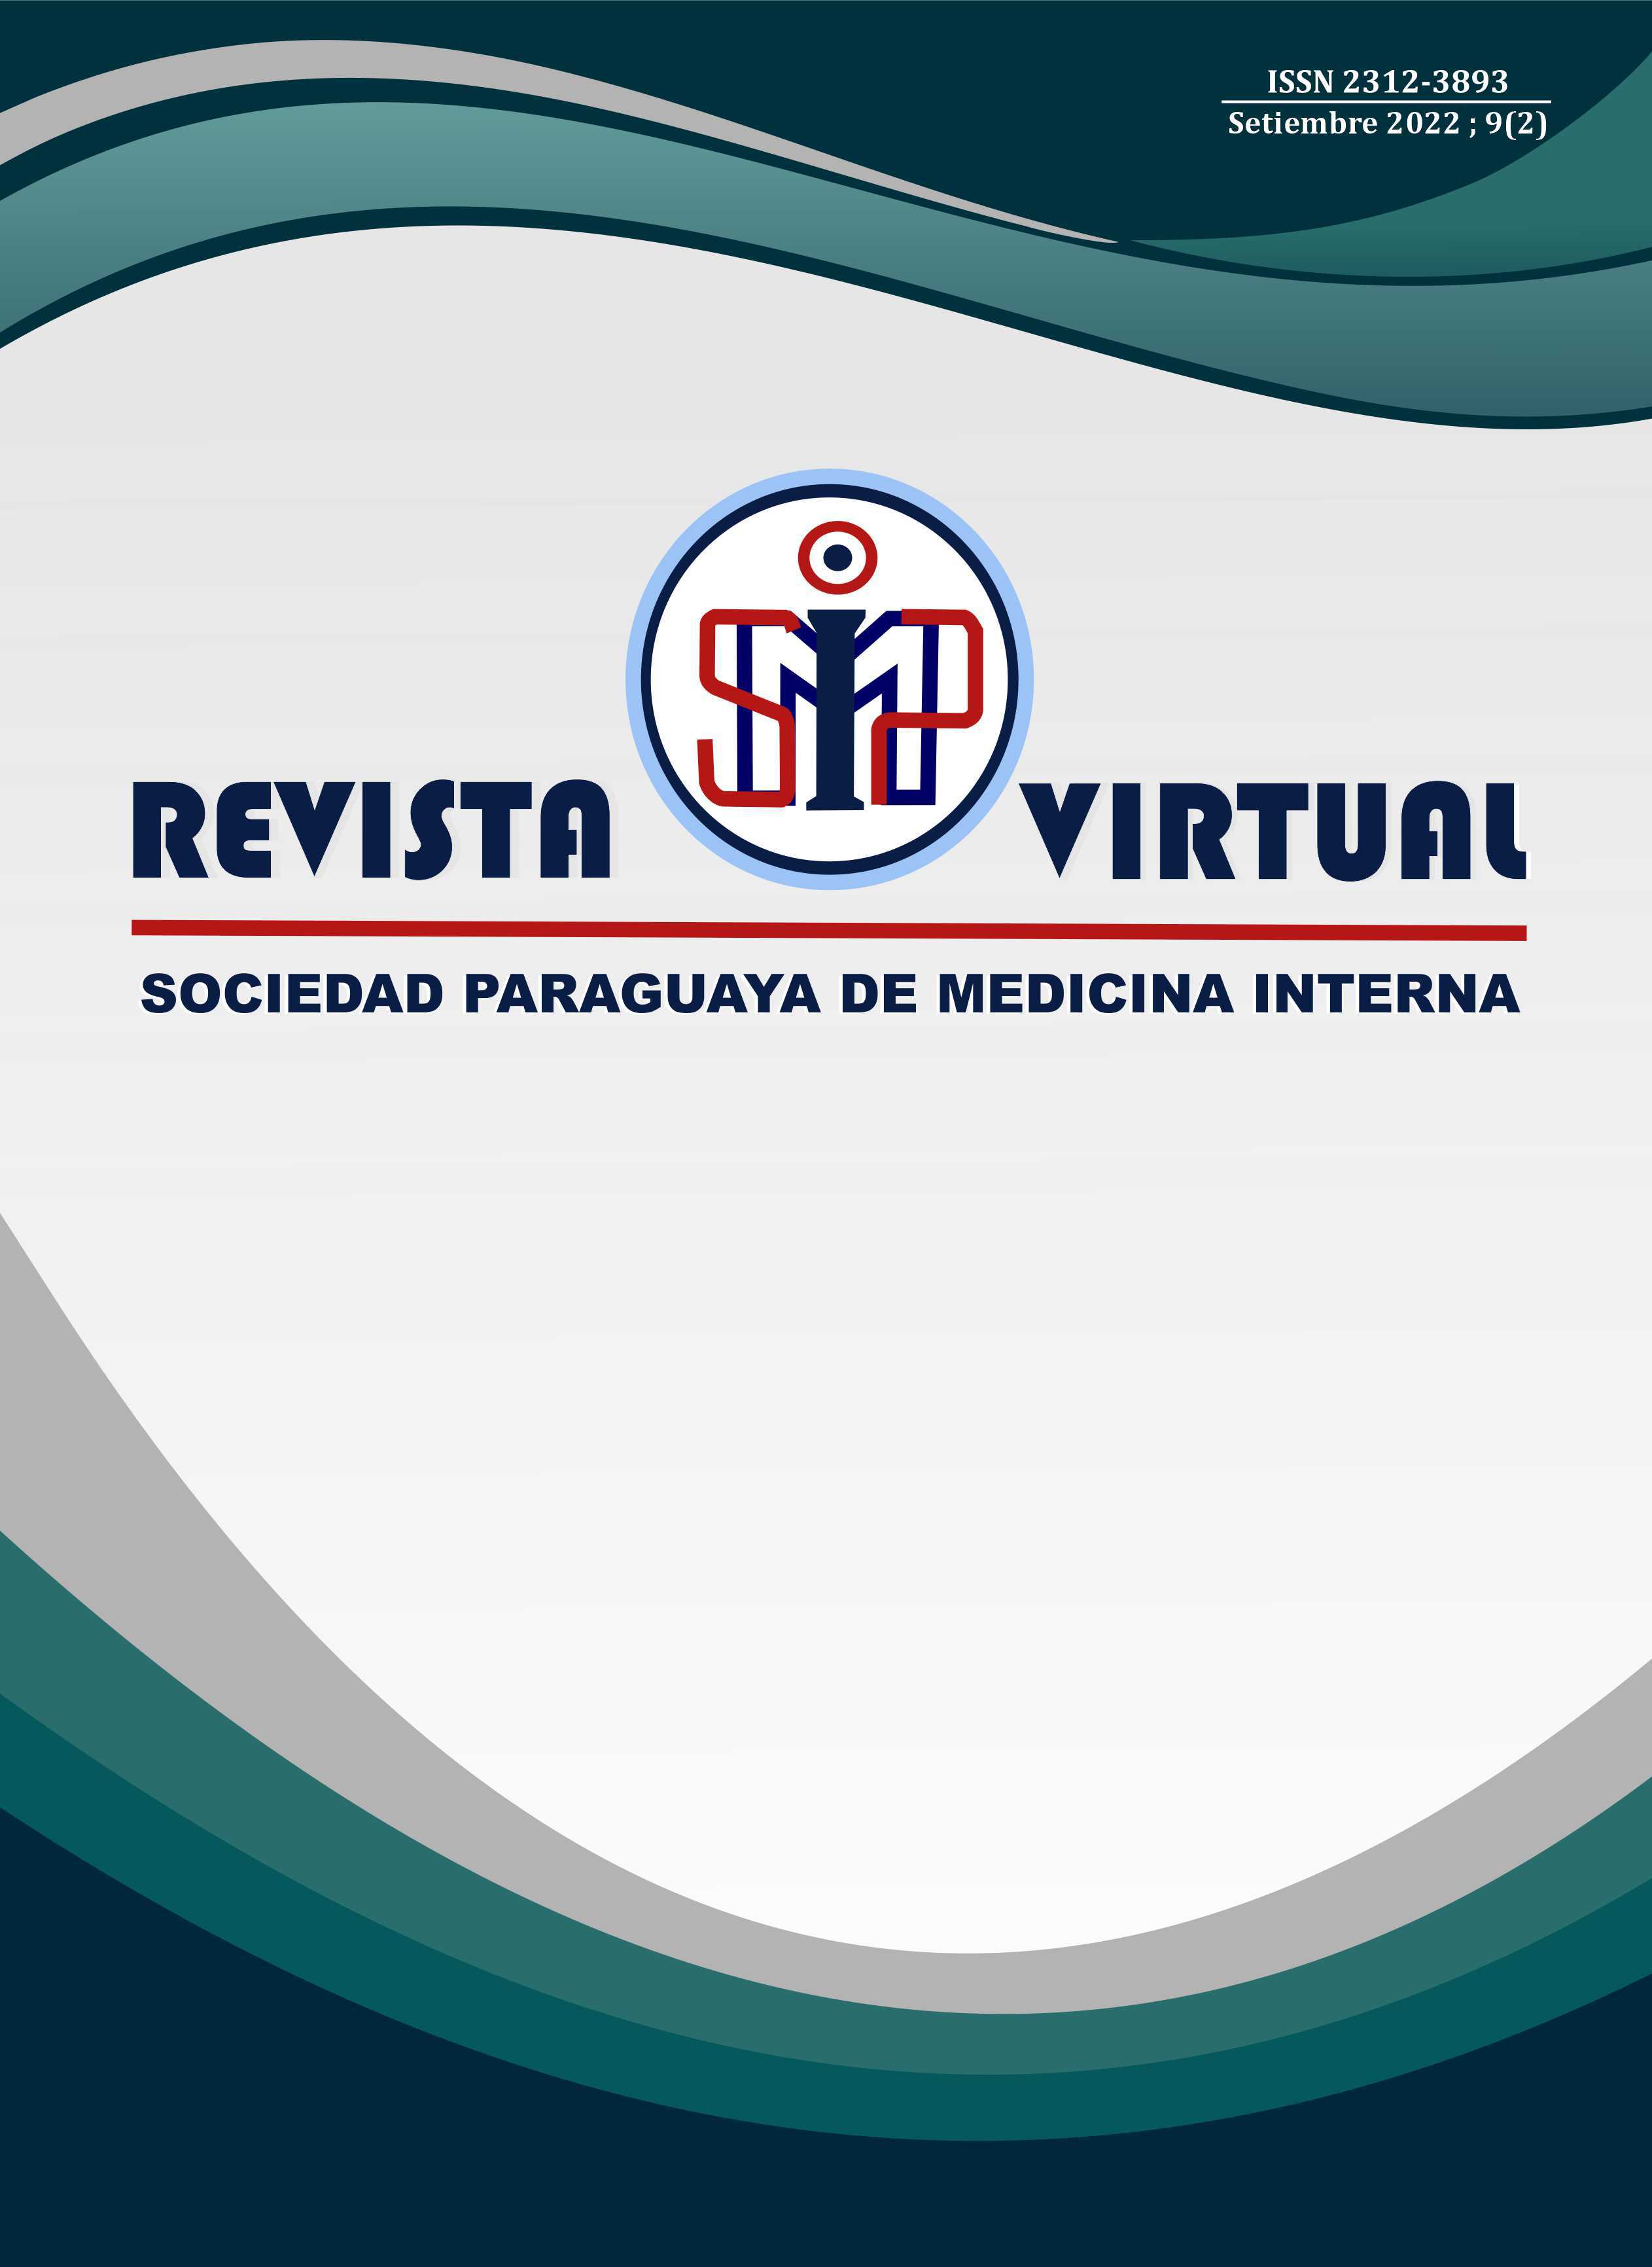 /tapasrevistas/revista_virtual_soc_paraguaya_med_int.jpg